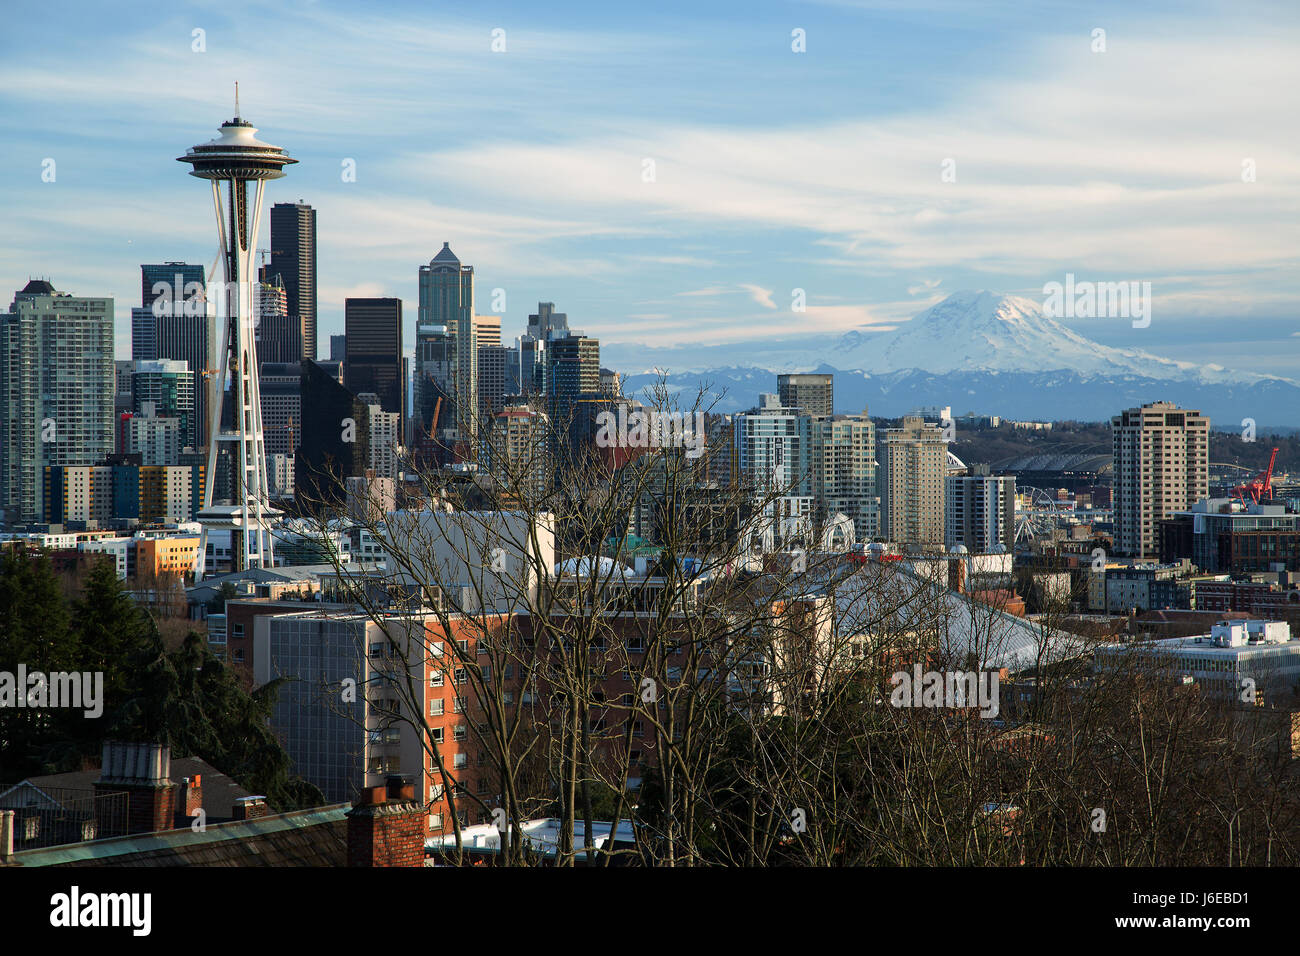 Skyline von Seattle mit der Space Needle und Mt. Rainier Stockfoto